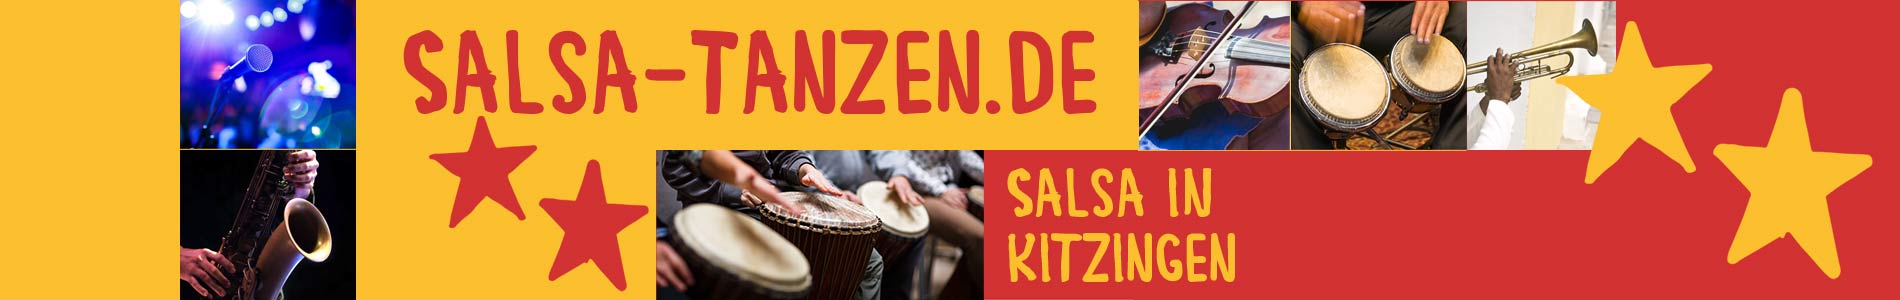 Salsa in Kitzingen – Salsa lernen und tanzen, Tanzkurse, Partys, Veranstaltungen